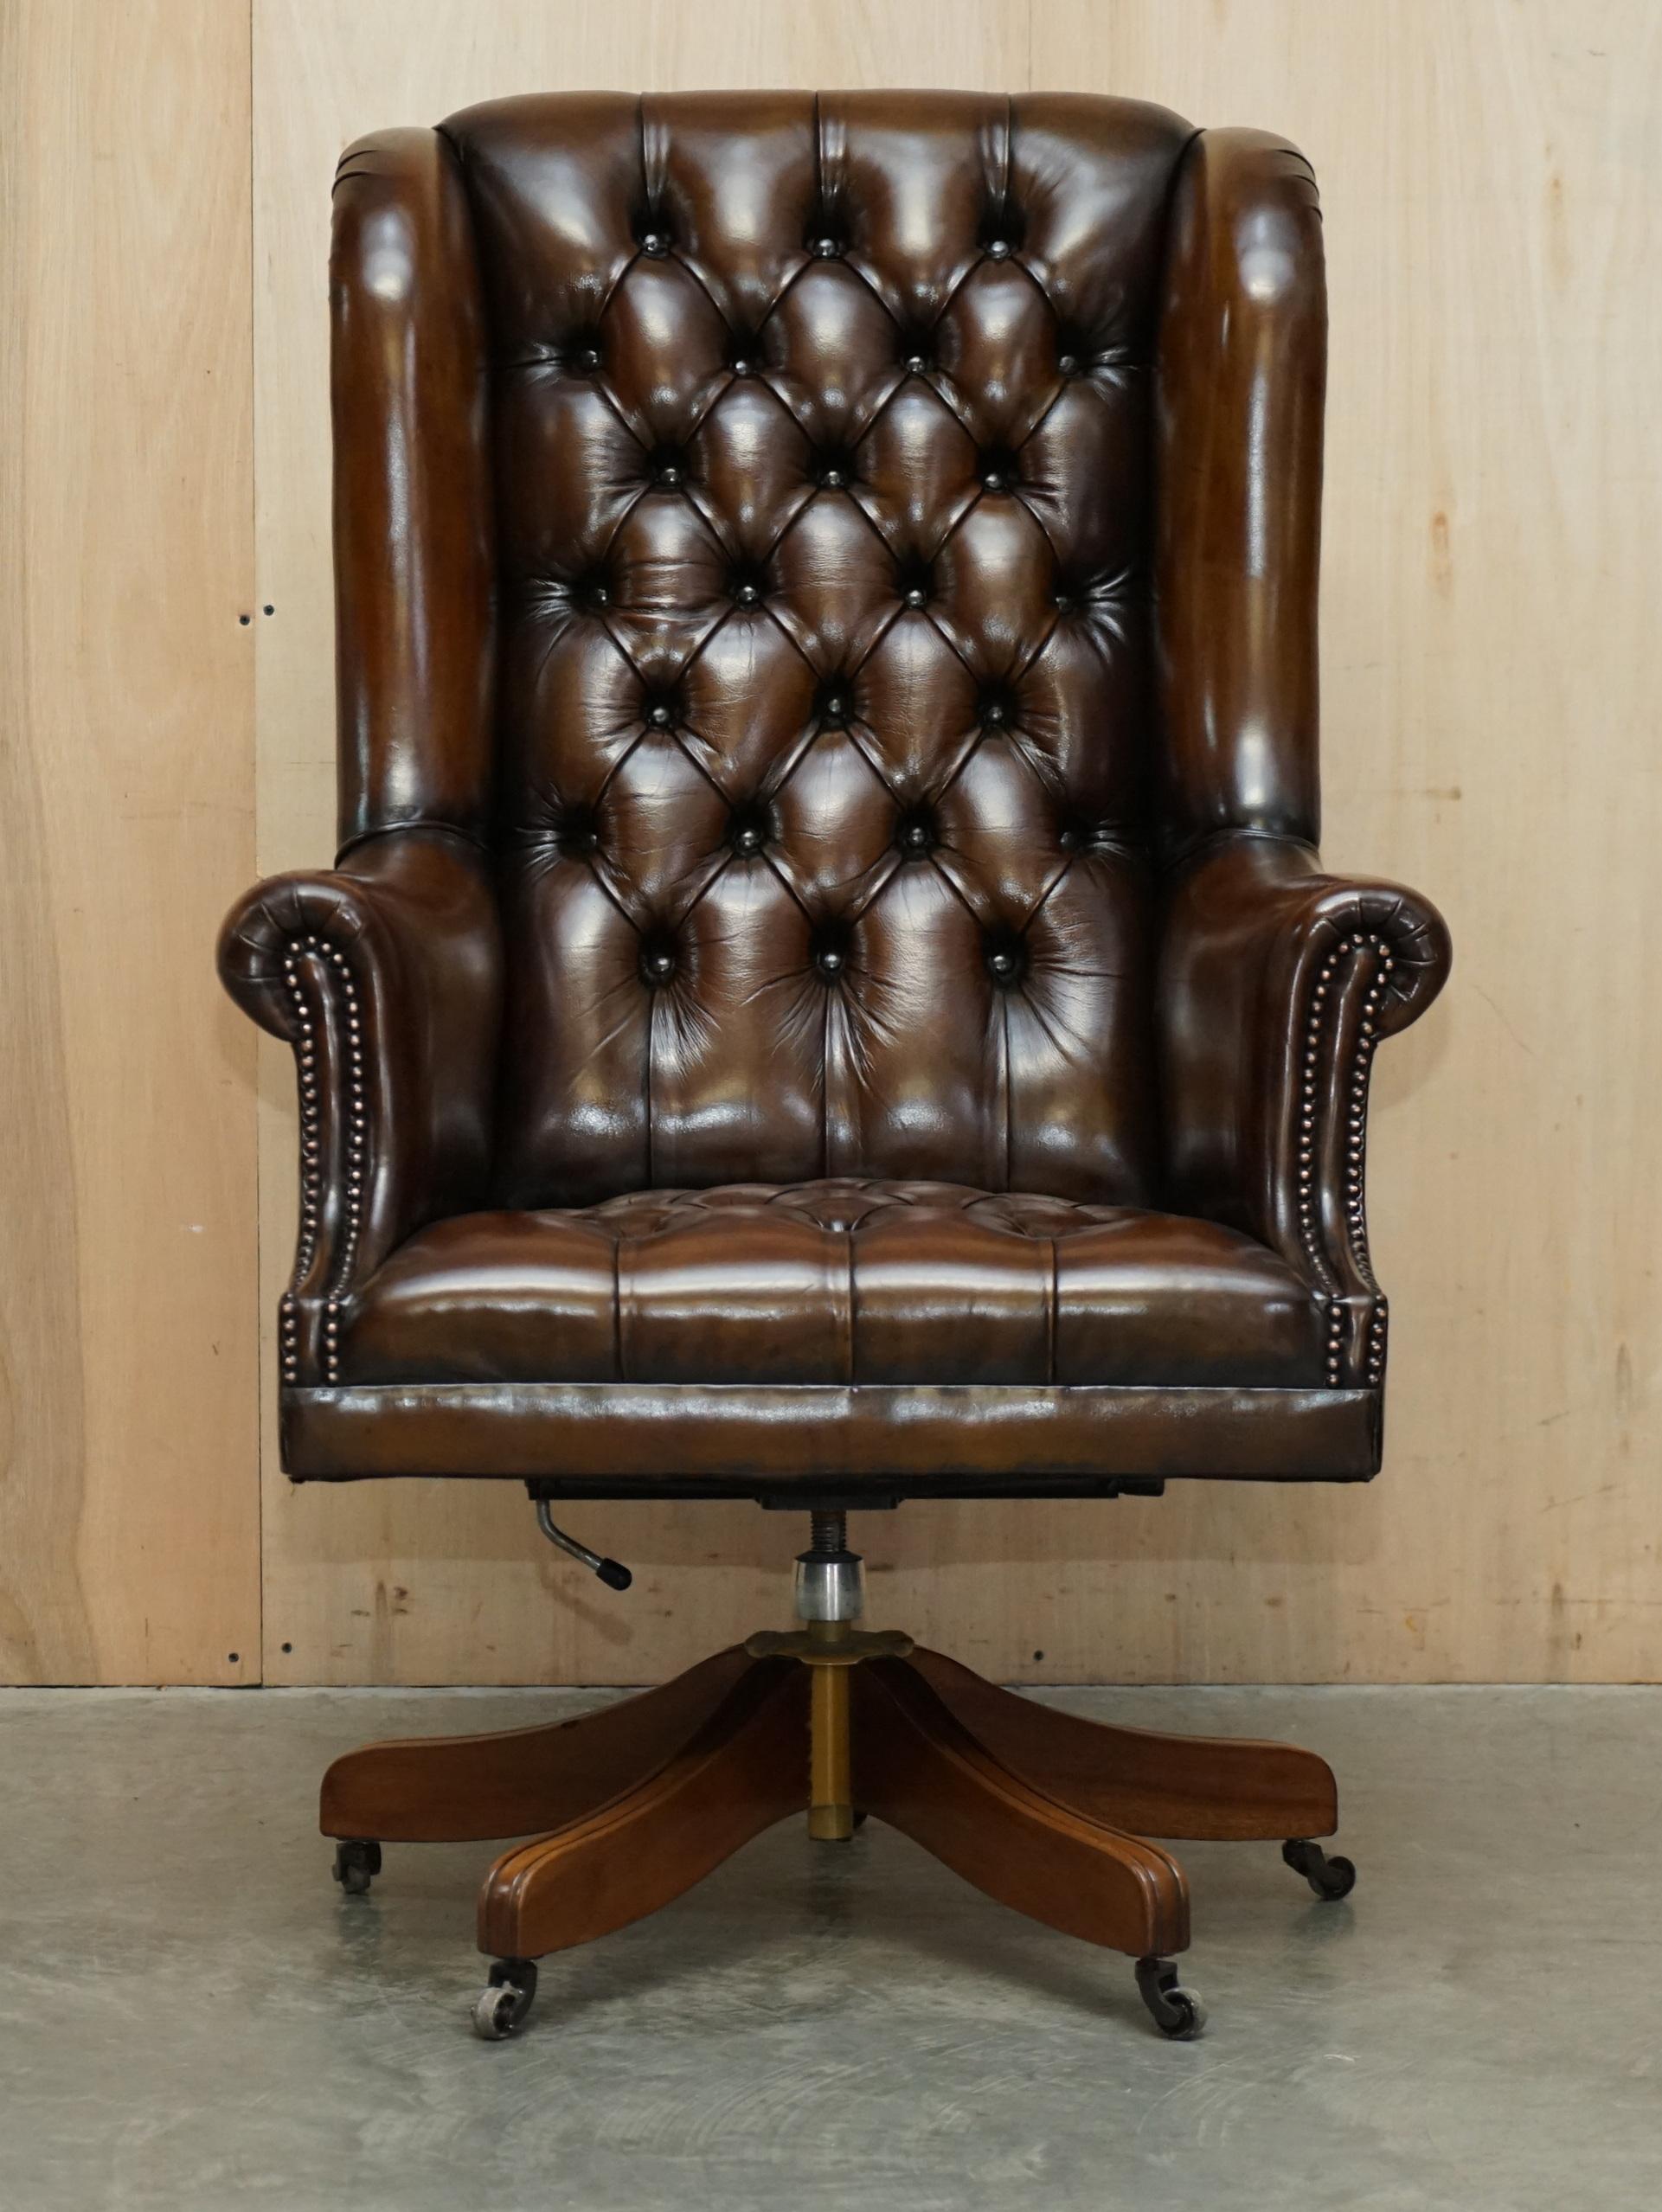 Wir freuen uns, diese atemberaubende restauriert Hand gefärbt Zigarre braunem Leder sehr große Chesterfield Wingback Bürostuhl mit Original-Leder und Patina zum Verkauf anbieten.

Das ist in der Tat ein sehr bequemer Kapitänssessel, wie Ihr